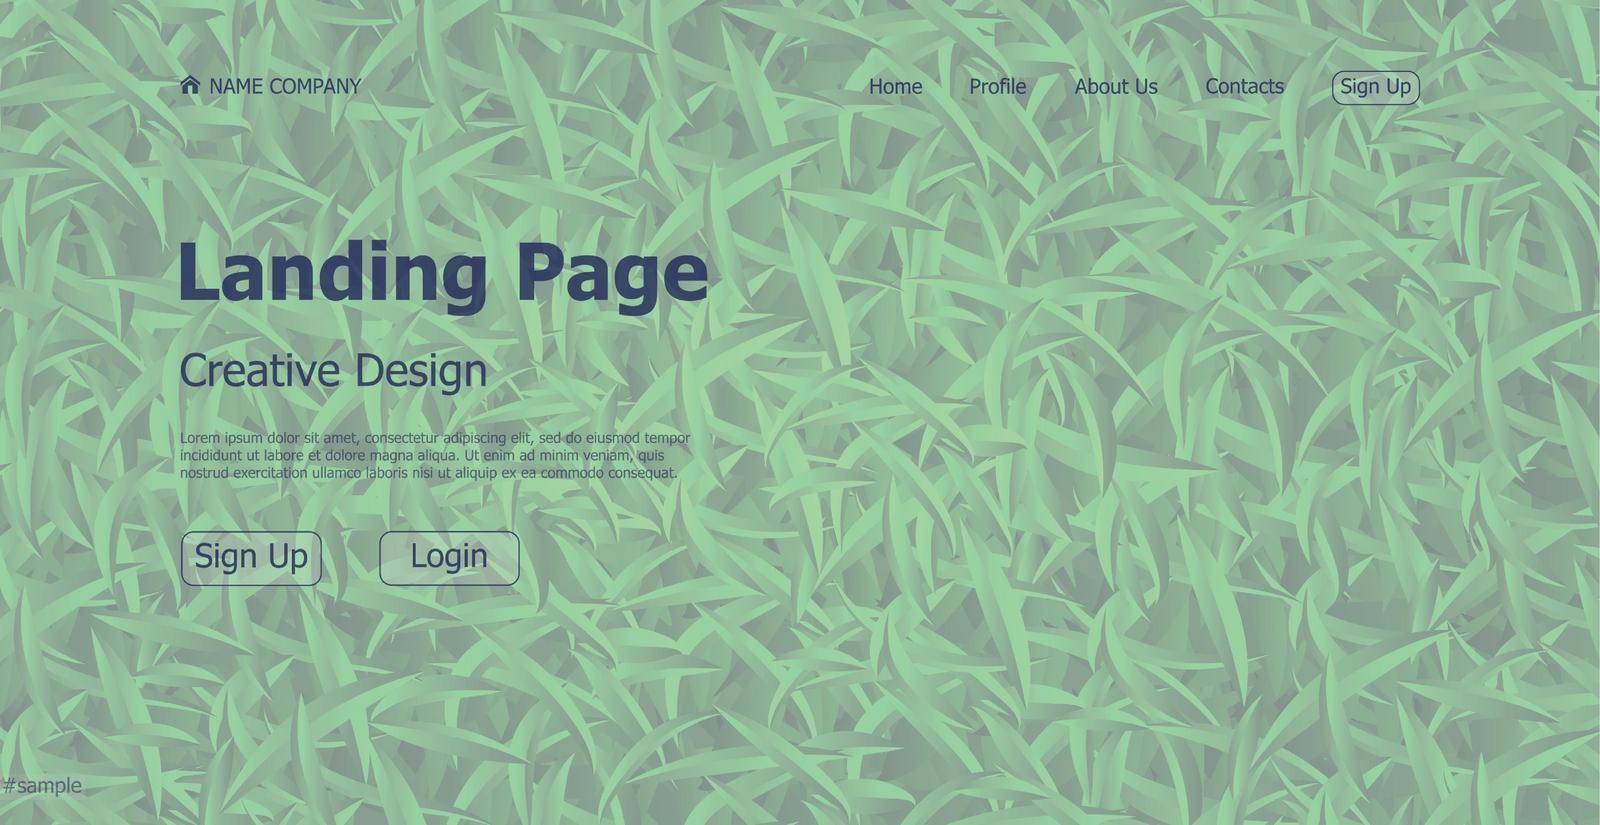 Eco problem landing page design concept website - Vector by BEMPhoto